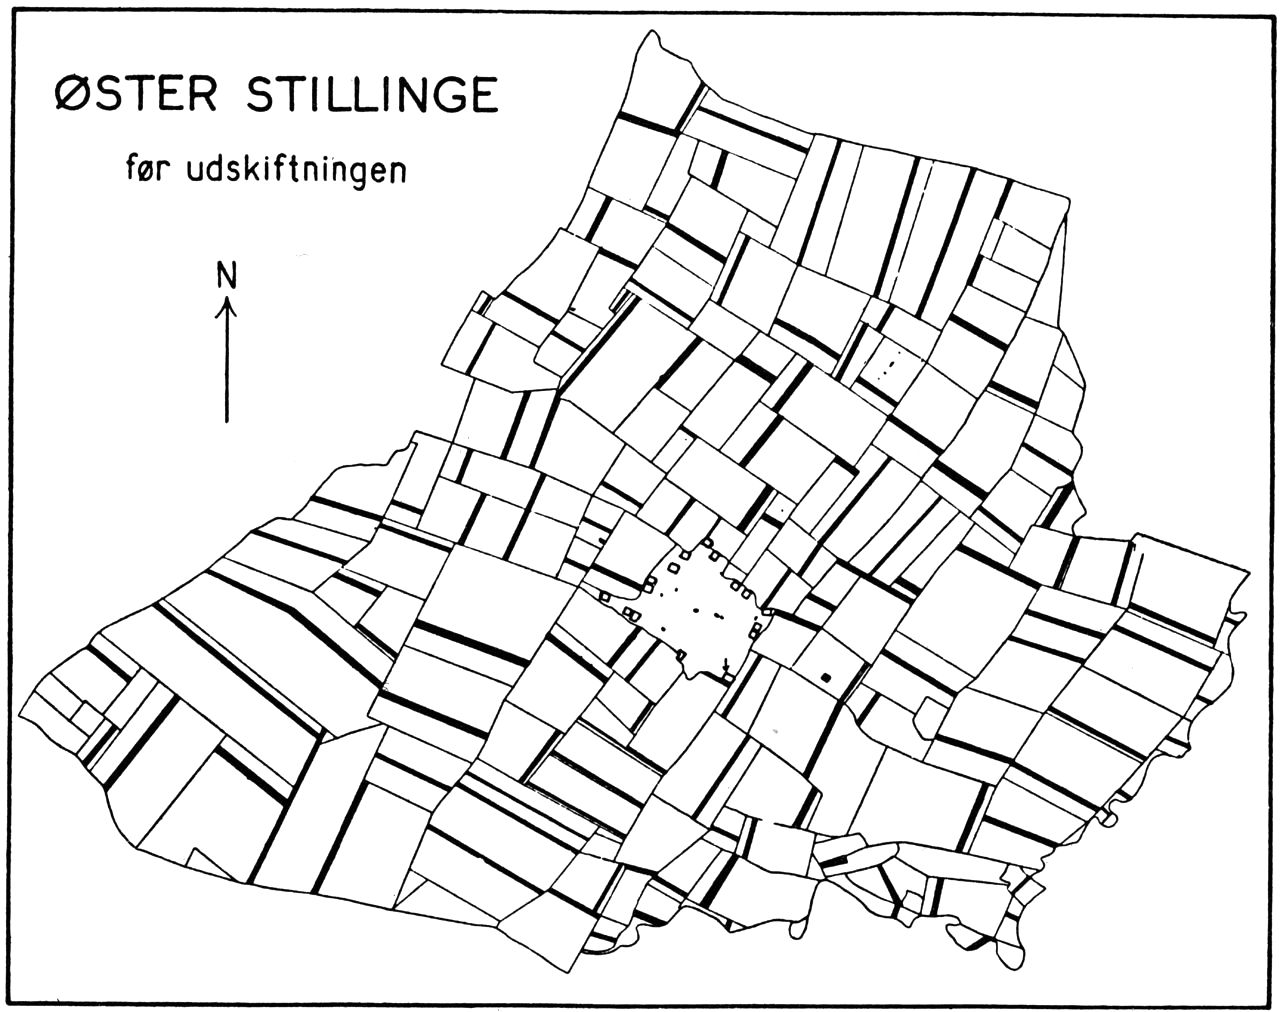 (Kort). Øster Stillinge nv.f. Slagelse før udskiftningen. Med sort er angivet en enkelt gårds parceller, i alt 132. Målestok 1: 40.000.